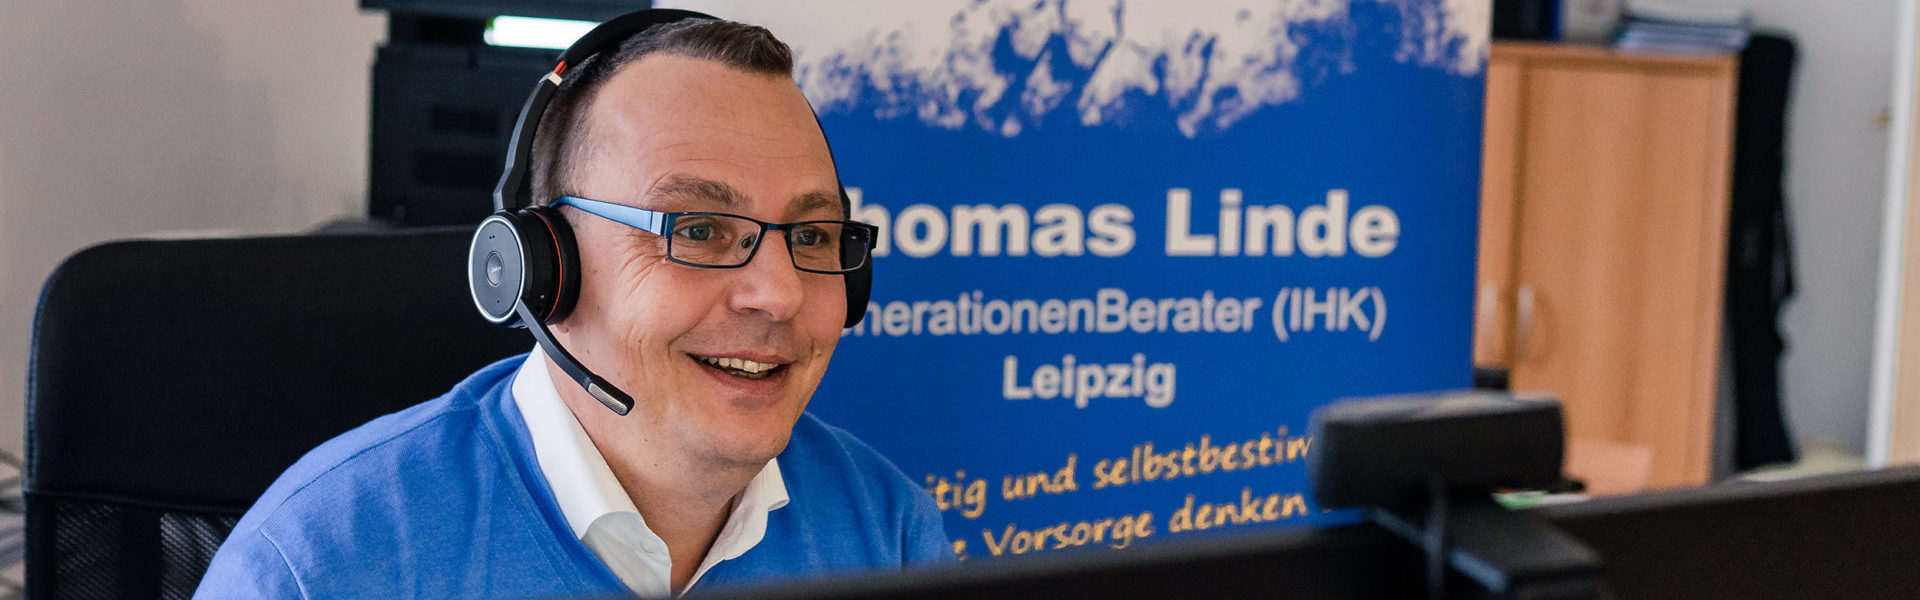 Thomas Linde. Inhaber von Generationenberatung Leipzig.